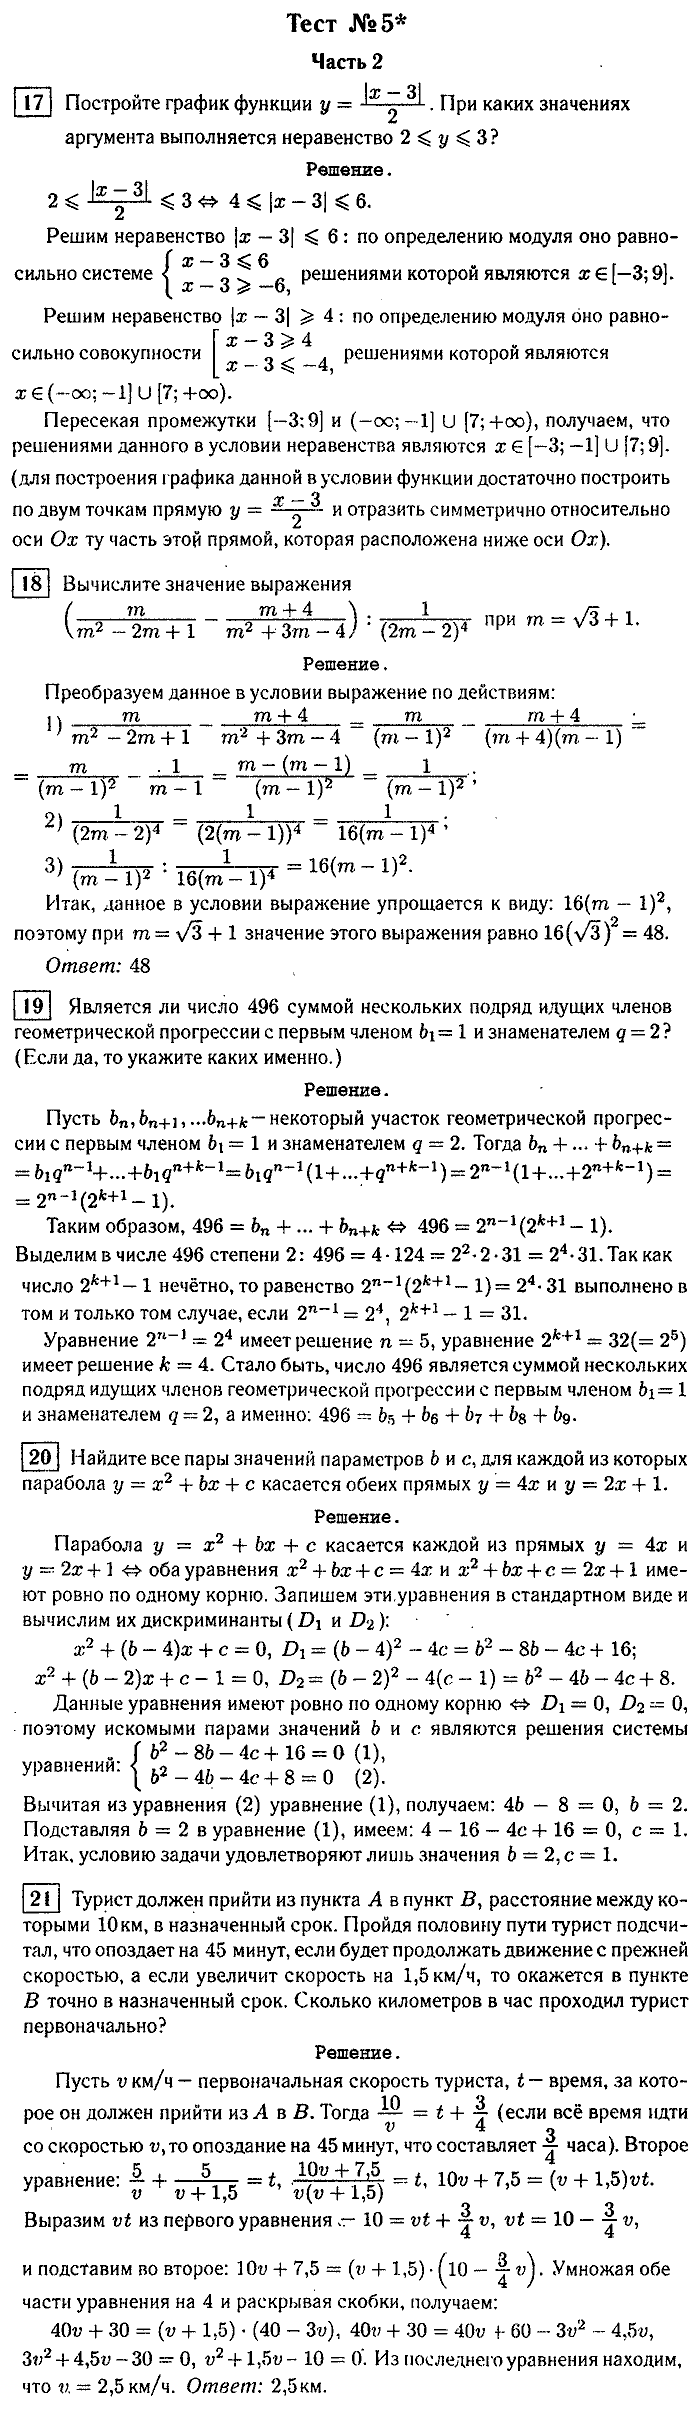 Итоговая аттестация, 9 класс, Мальцева, 2010, §3. Решение тестов 2007 г. Задание: Тест №5